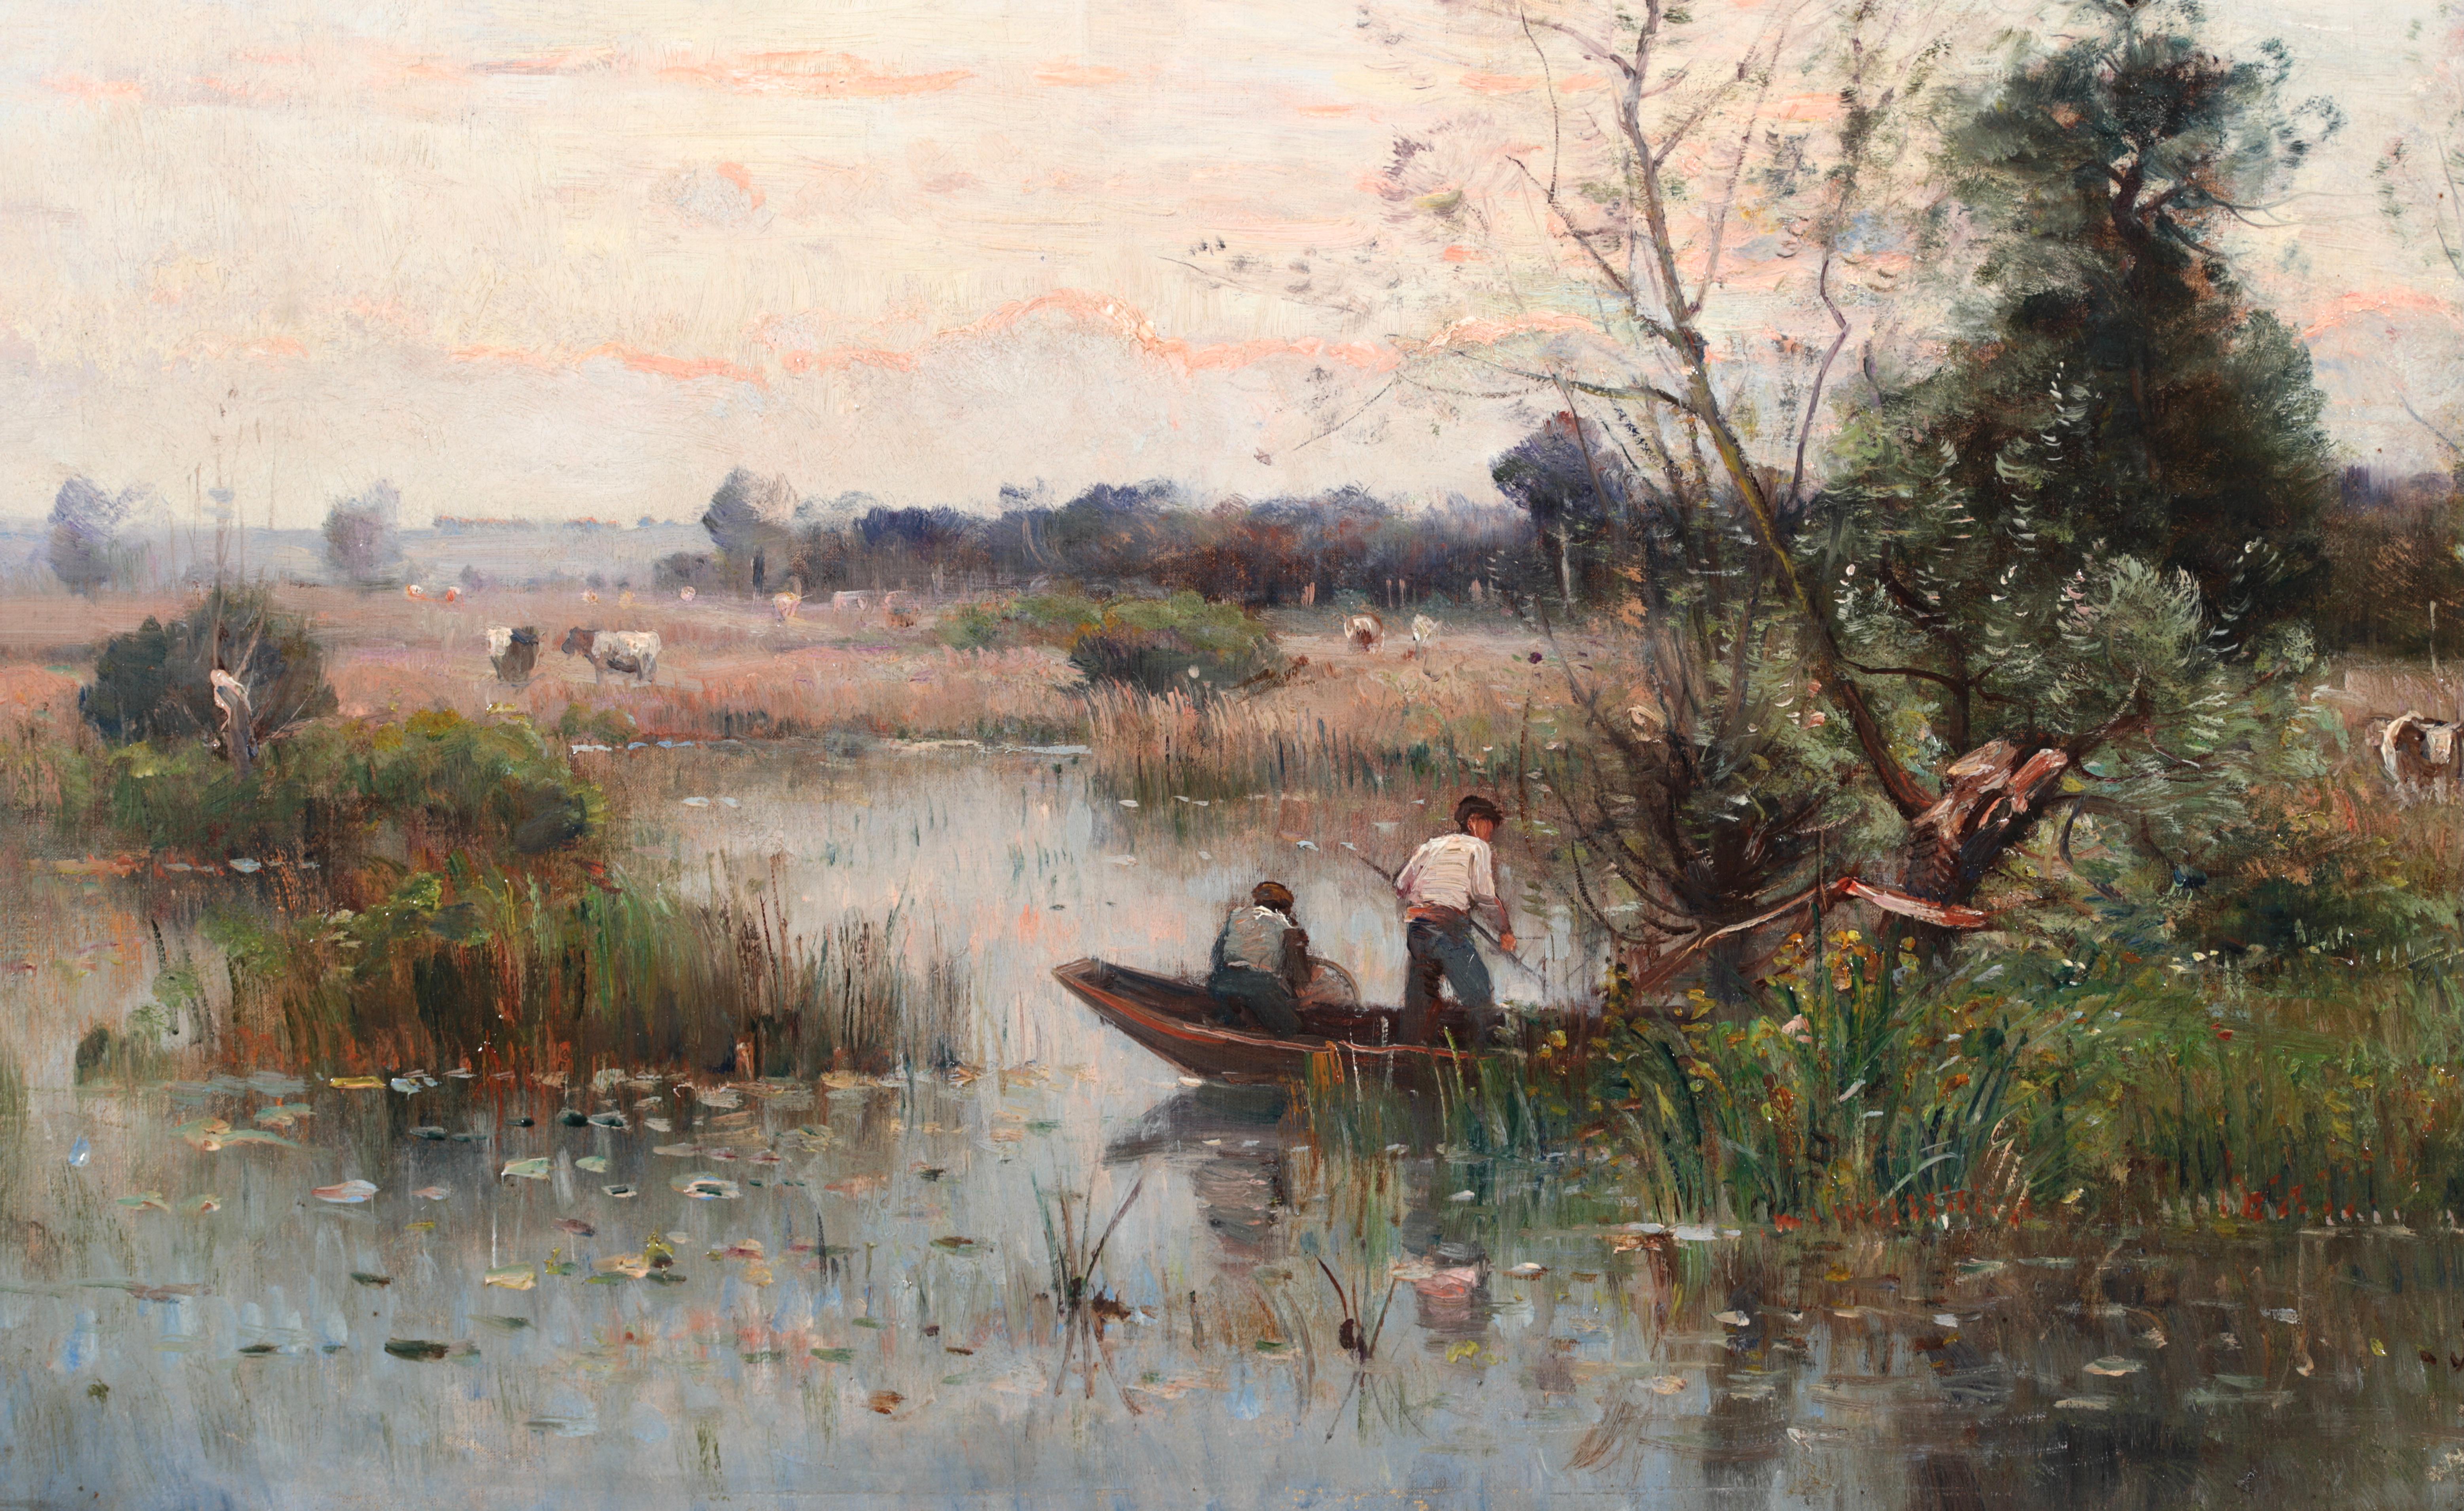 Fishing on a River - Impressionistisches Ölgemälde, Boot auf Fluss Landschaft von Louis Japy 5